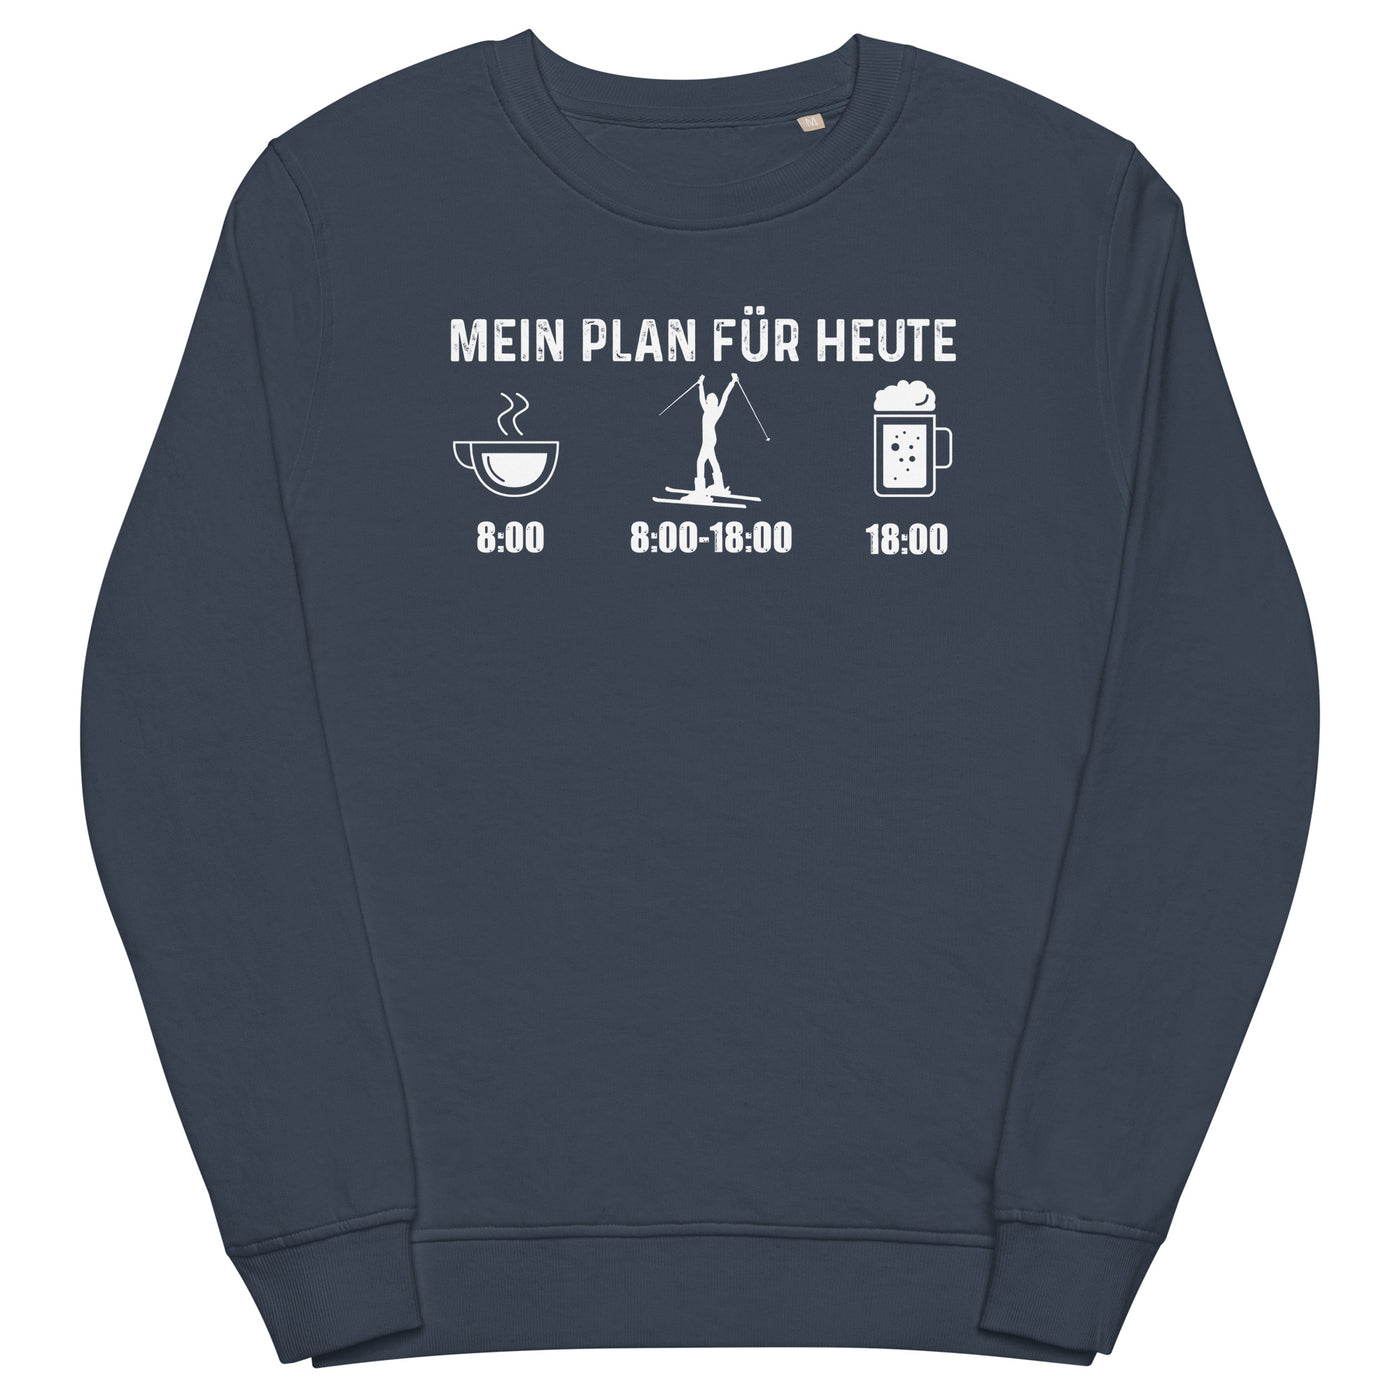 Mein Plan Für Heute 1 - Unisex Premium Organic Sweatshirt klettern ski xxx yyy zzz French Navy